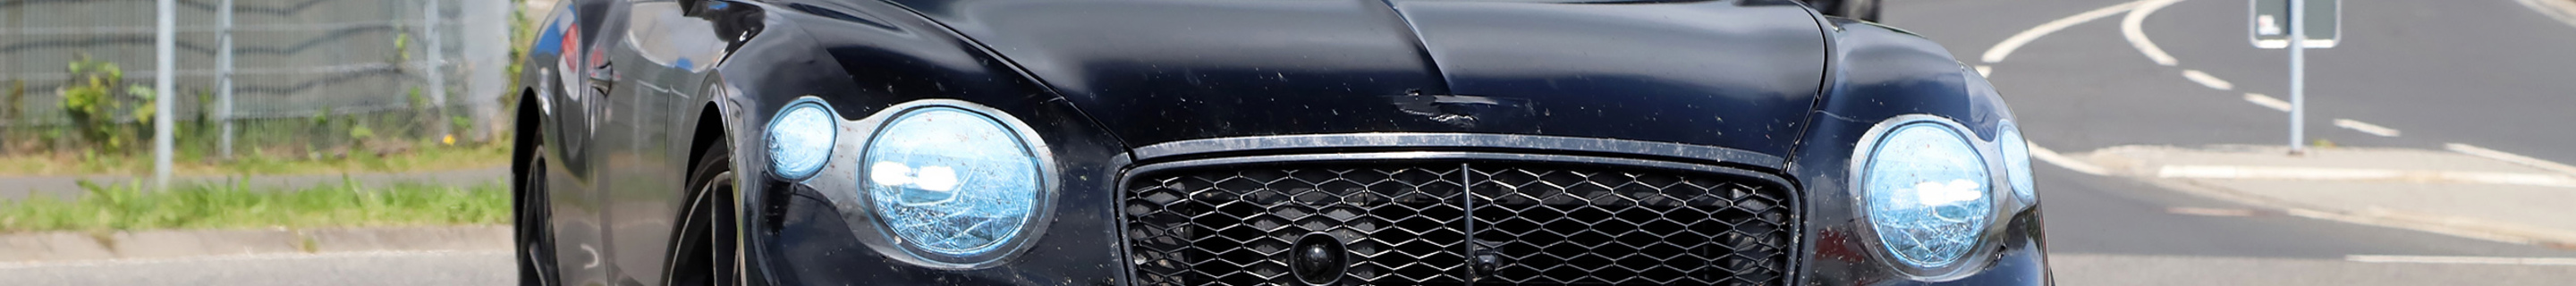 Bentley Continental GT 2025